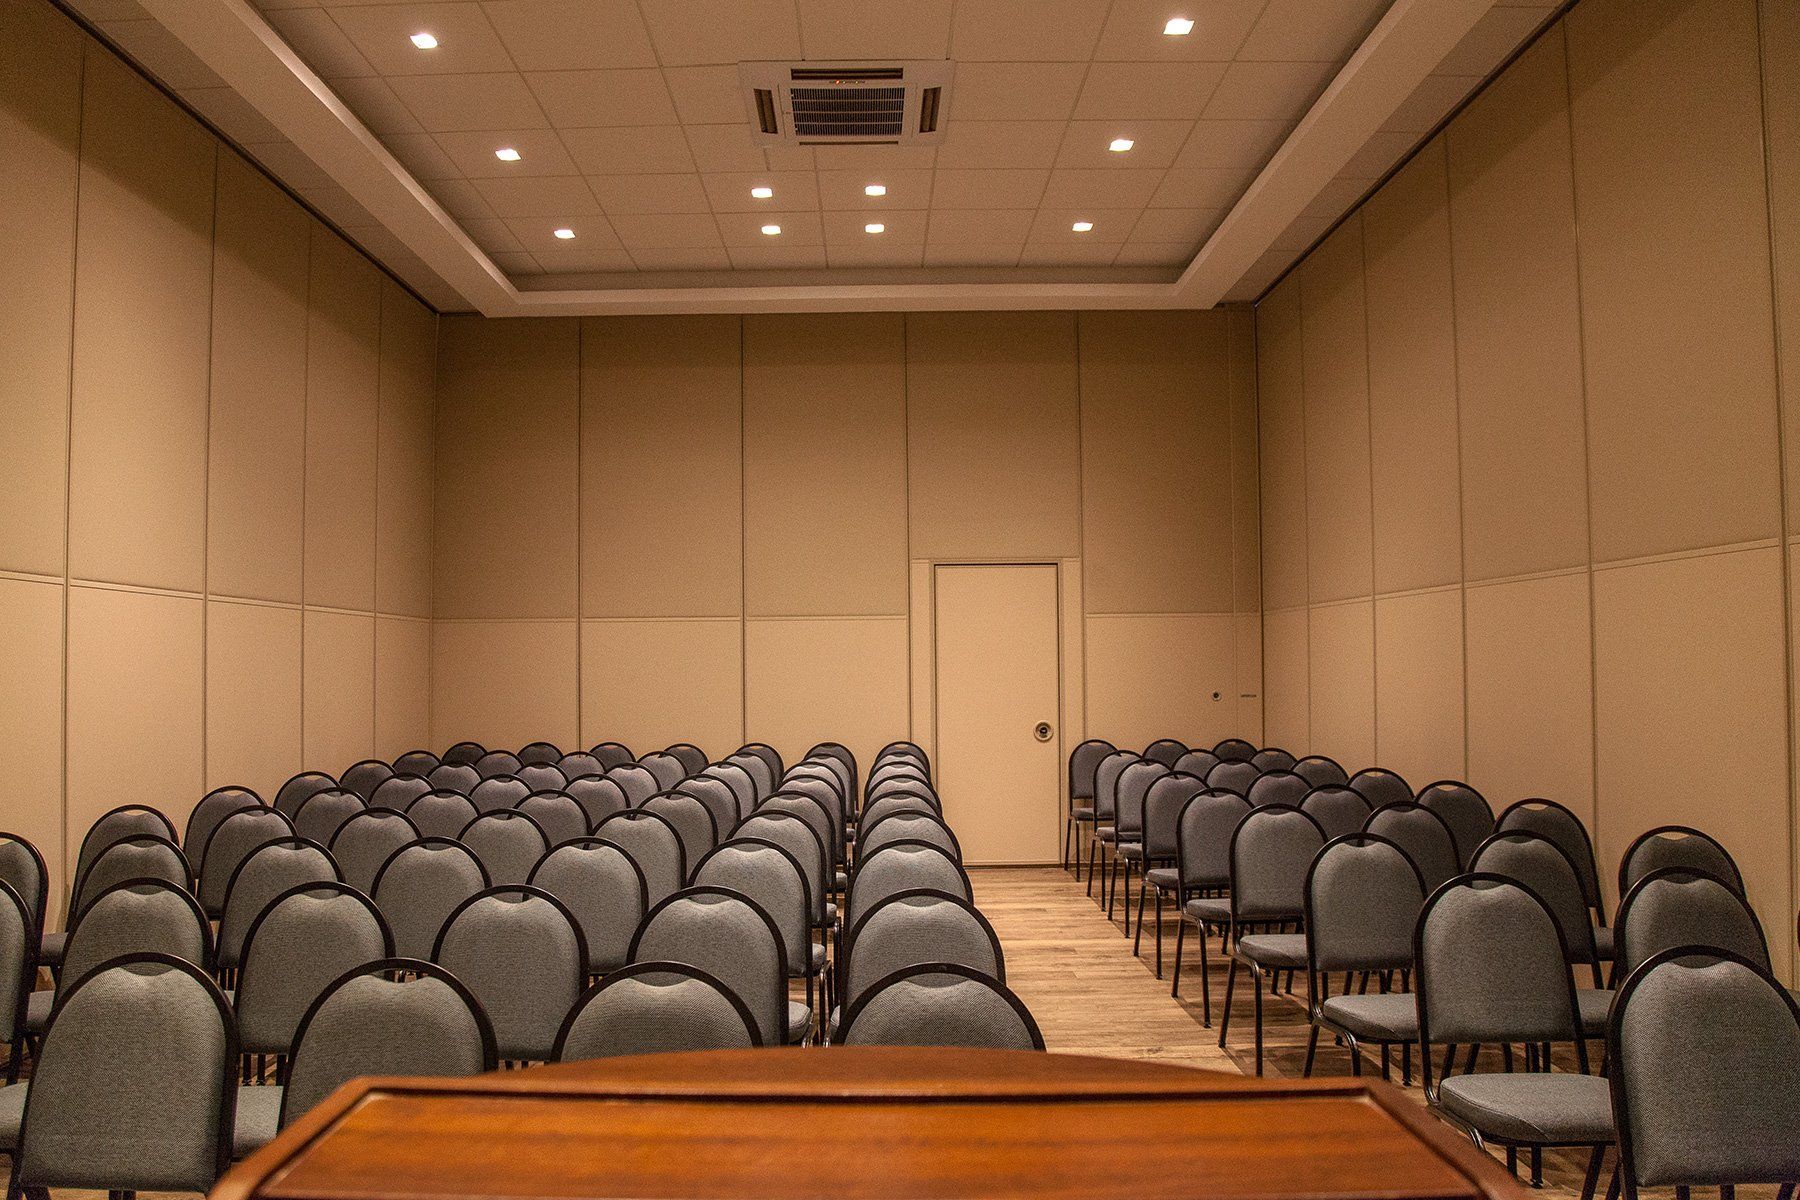 Uma sala de conferências com fileiras de cadeiras e um pódio no meio.